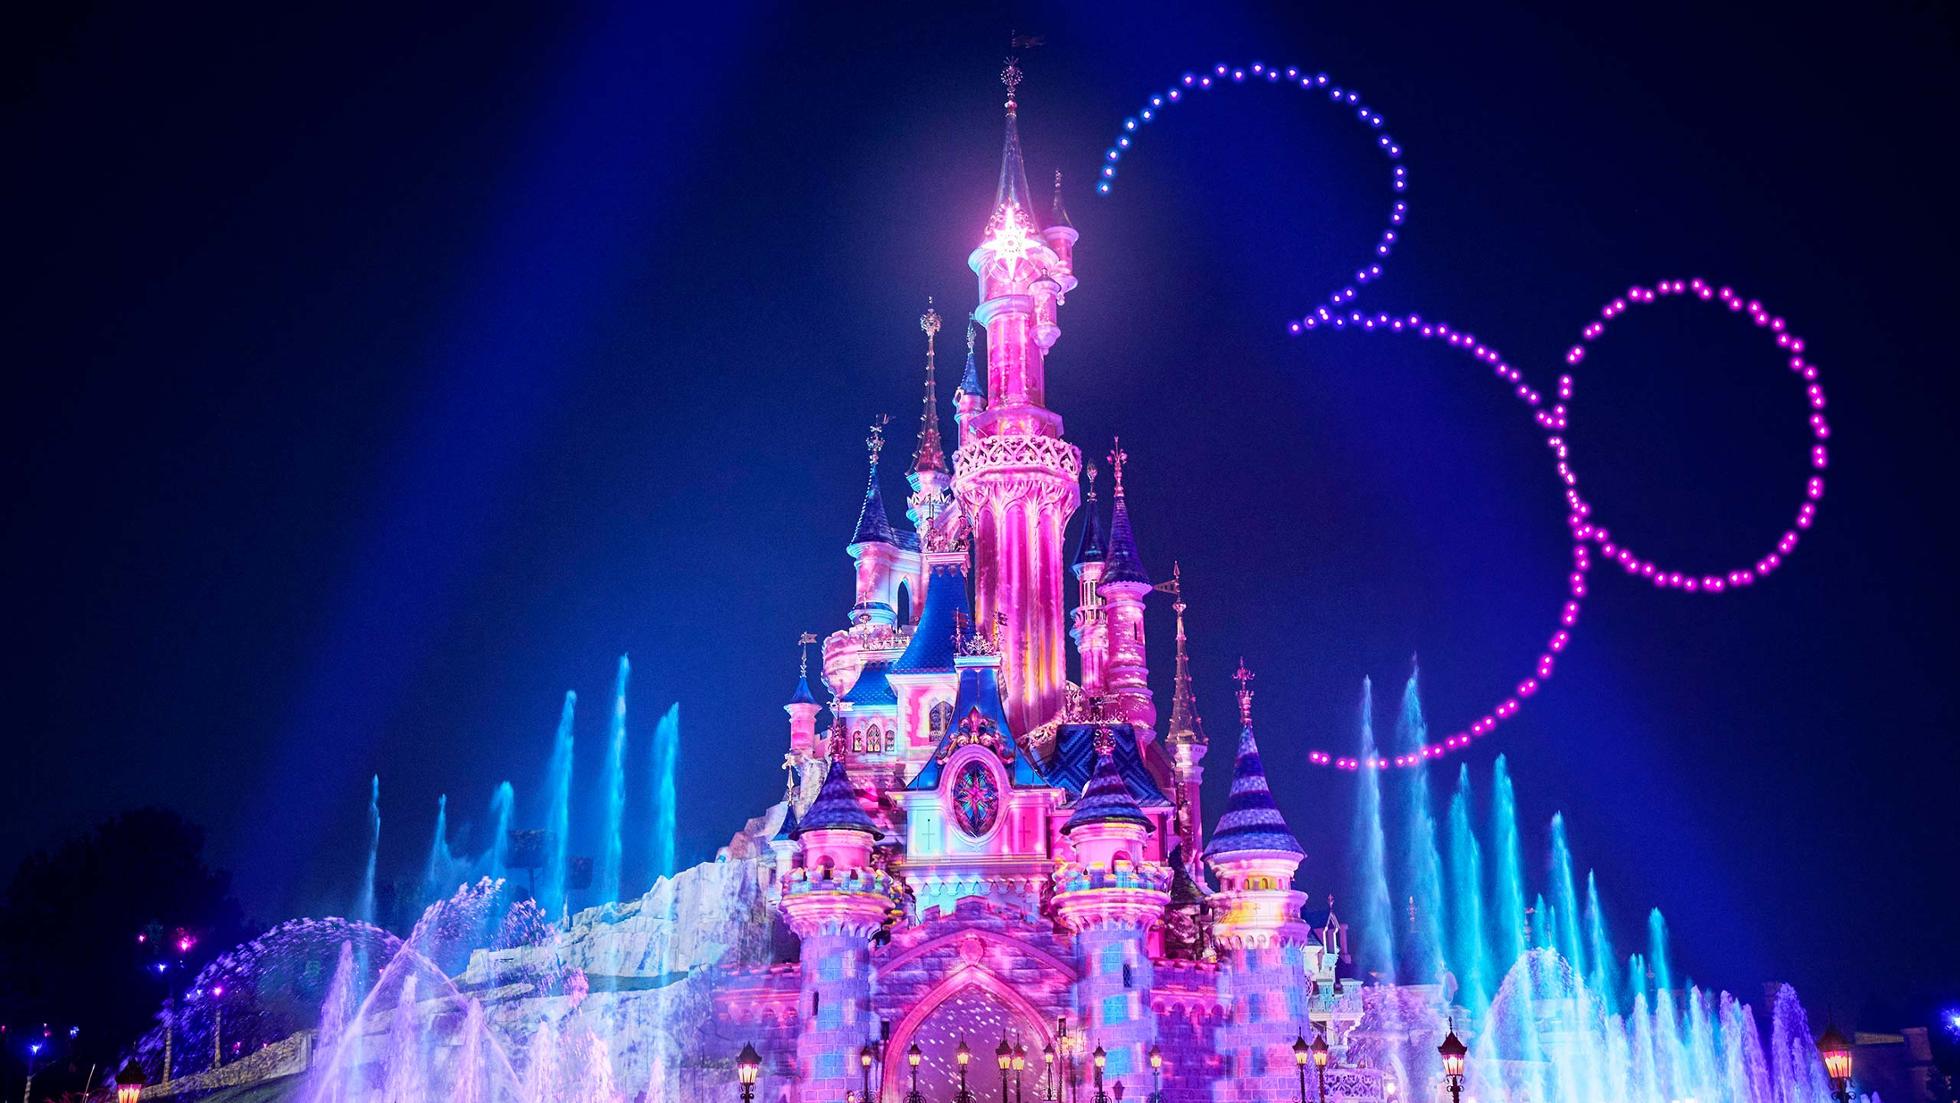 Are Disneyland Paris fireworks every night?